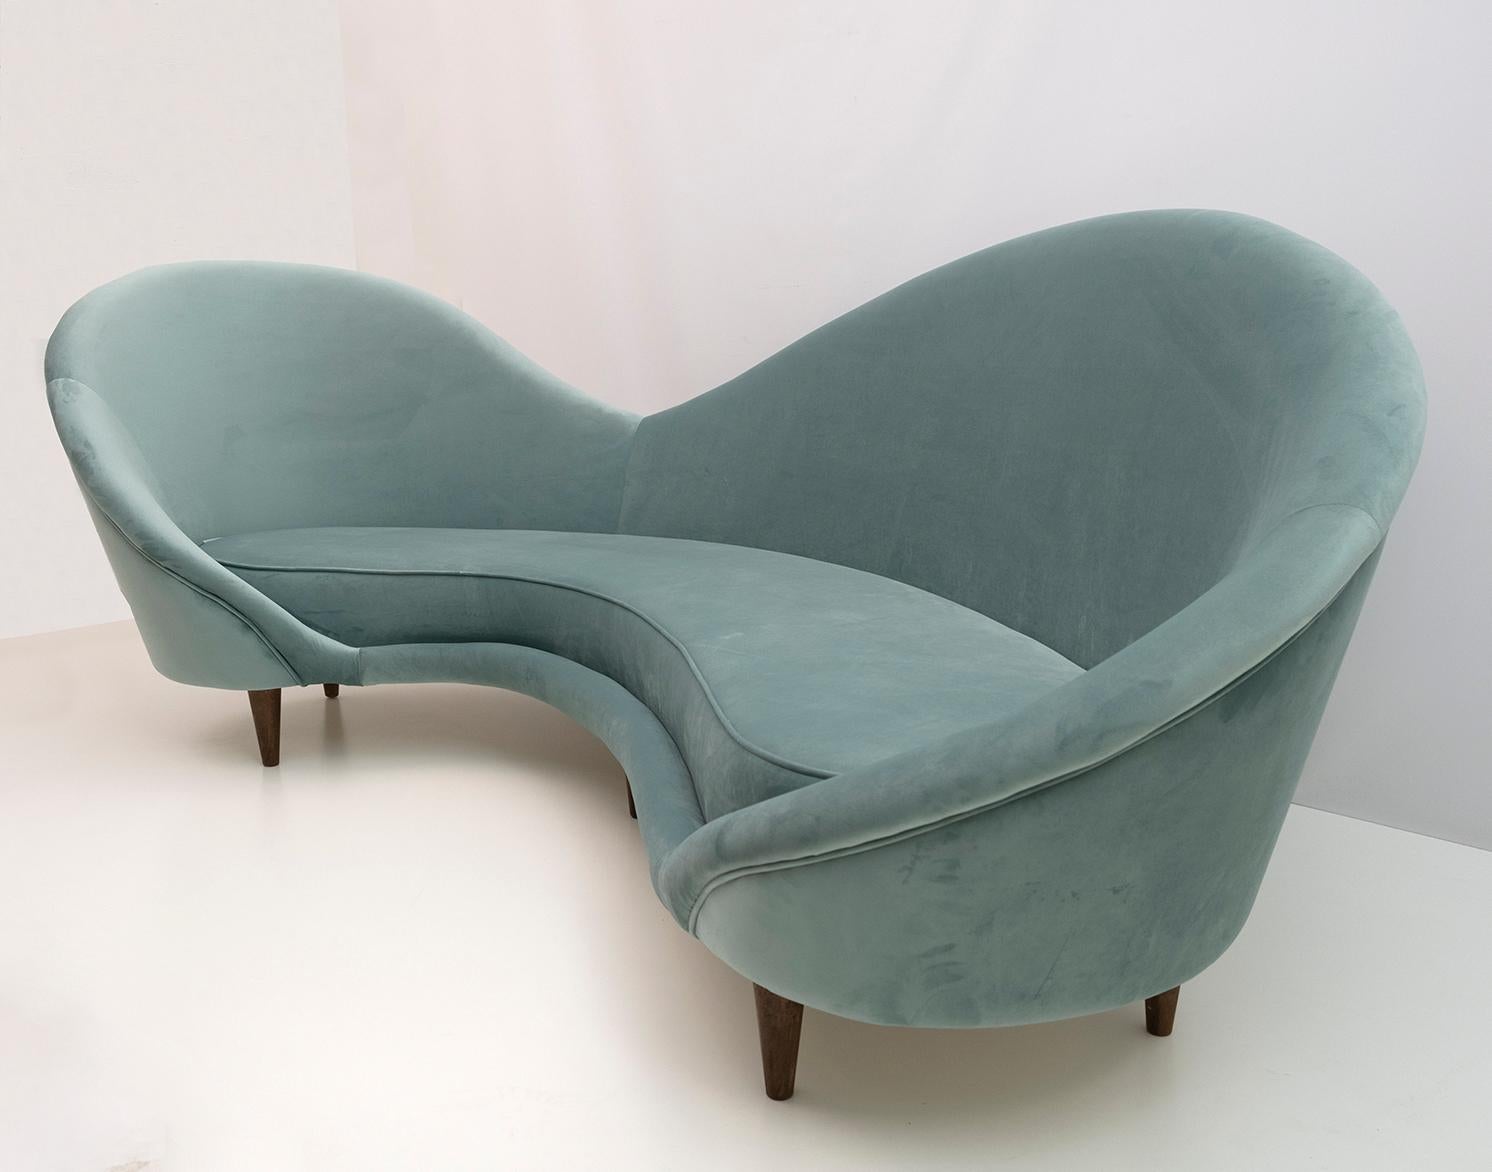 Canapé dans le style de Federico Munari, manufacture italienne des années 1950. Charmant canapé aux formes arrondies, tapissé de velours vert d'eau. Entièrement rénové.